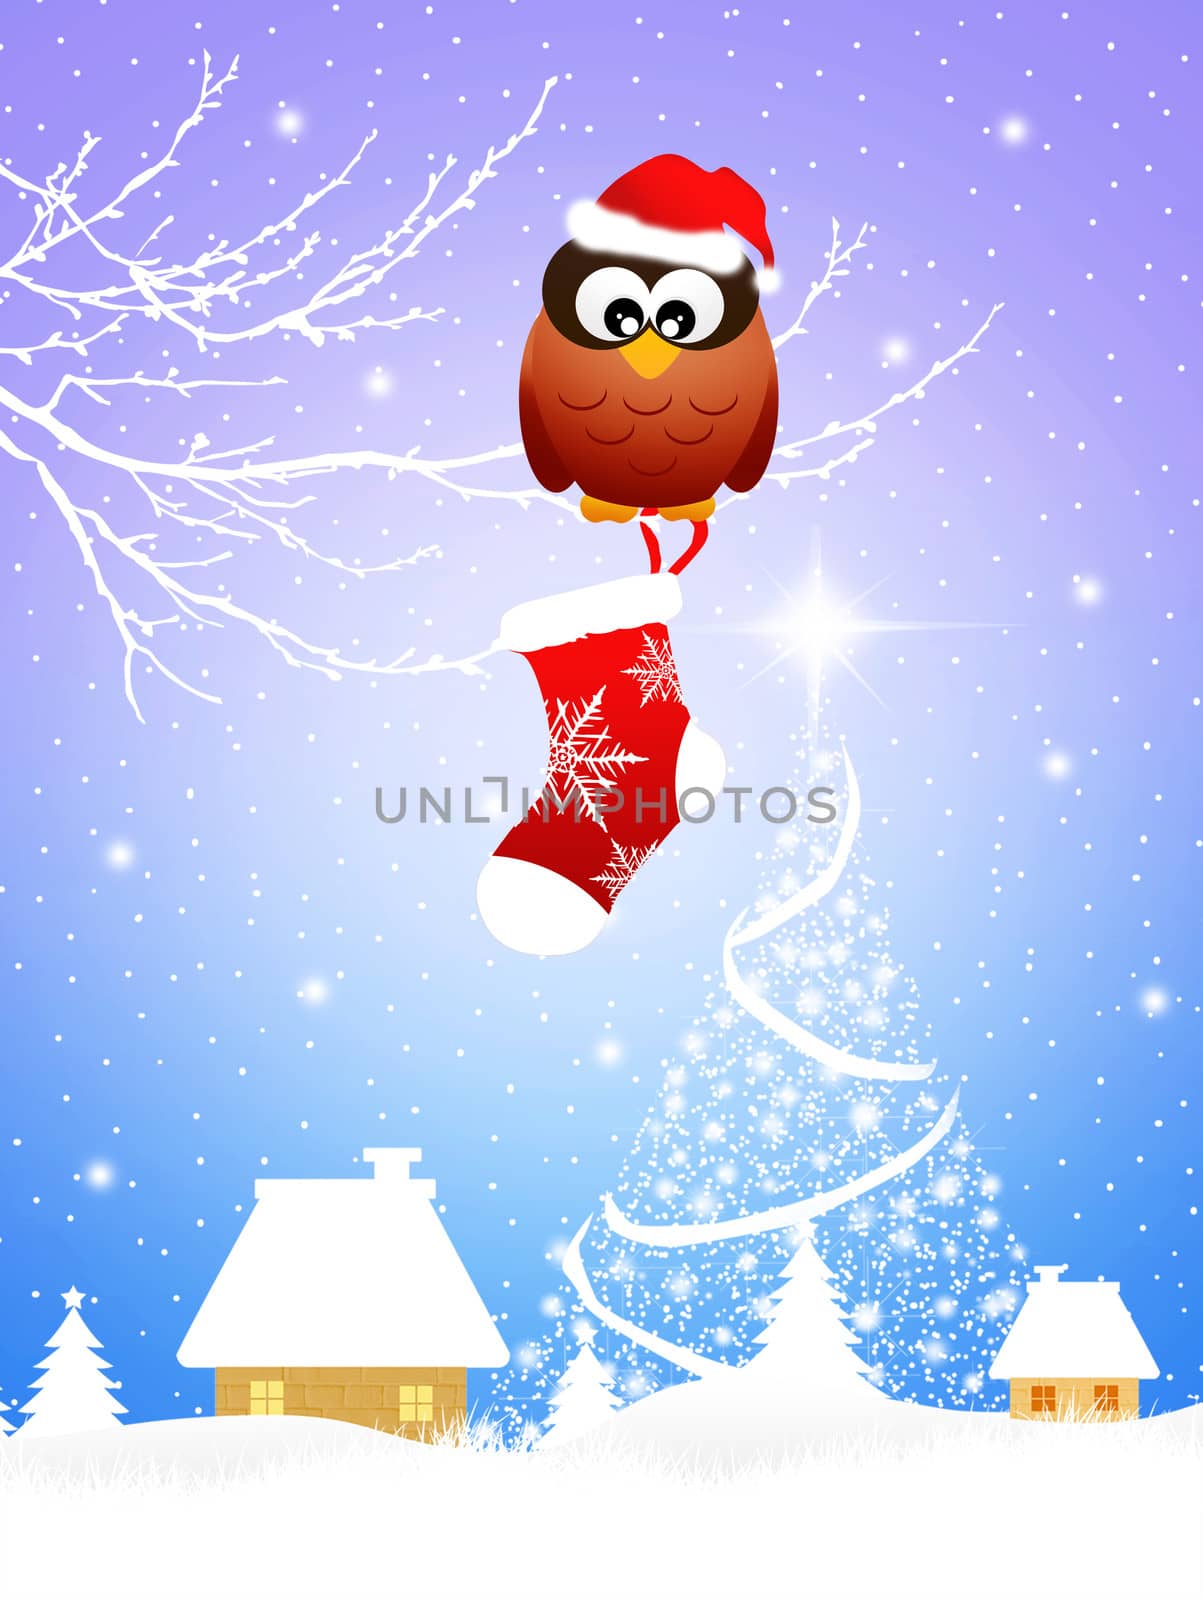 Owl at Christmas by adrenalina